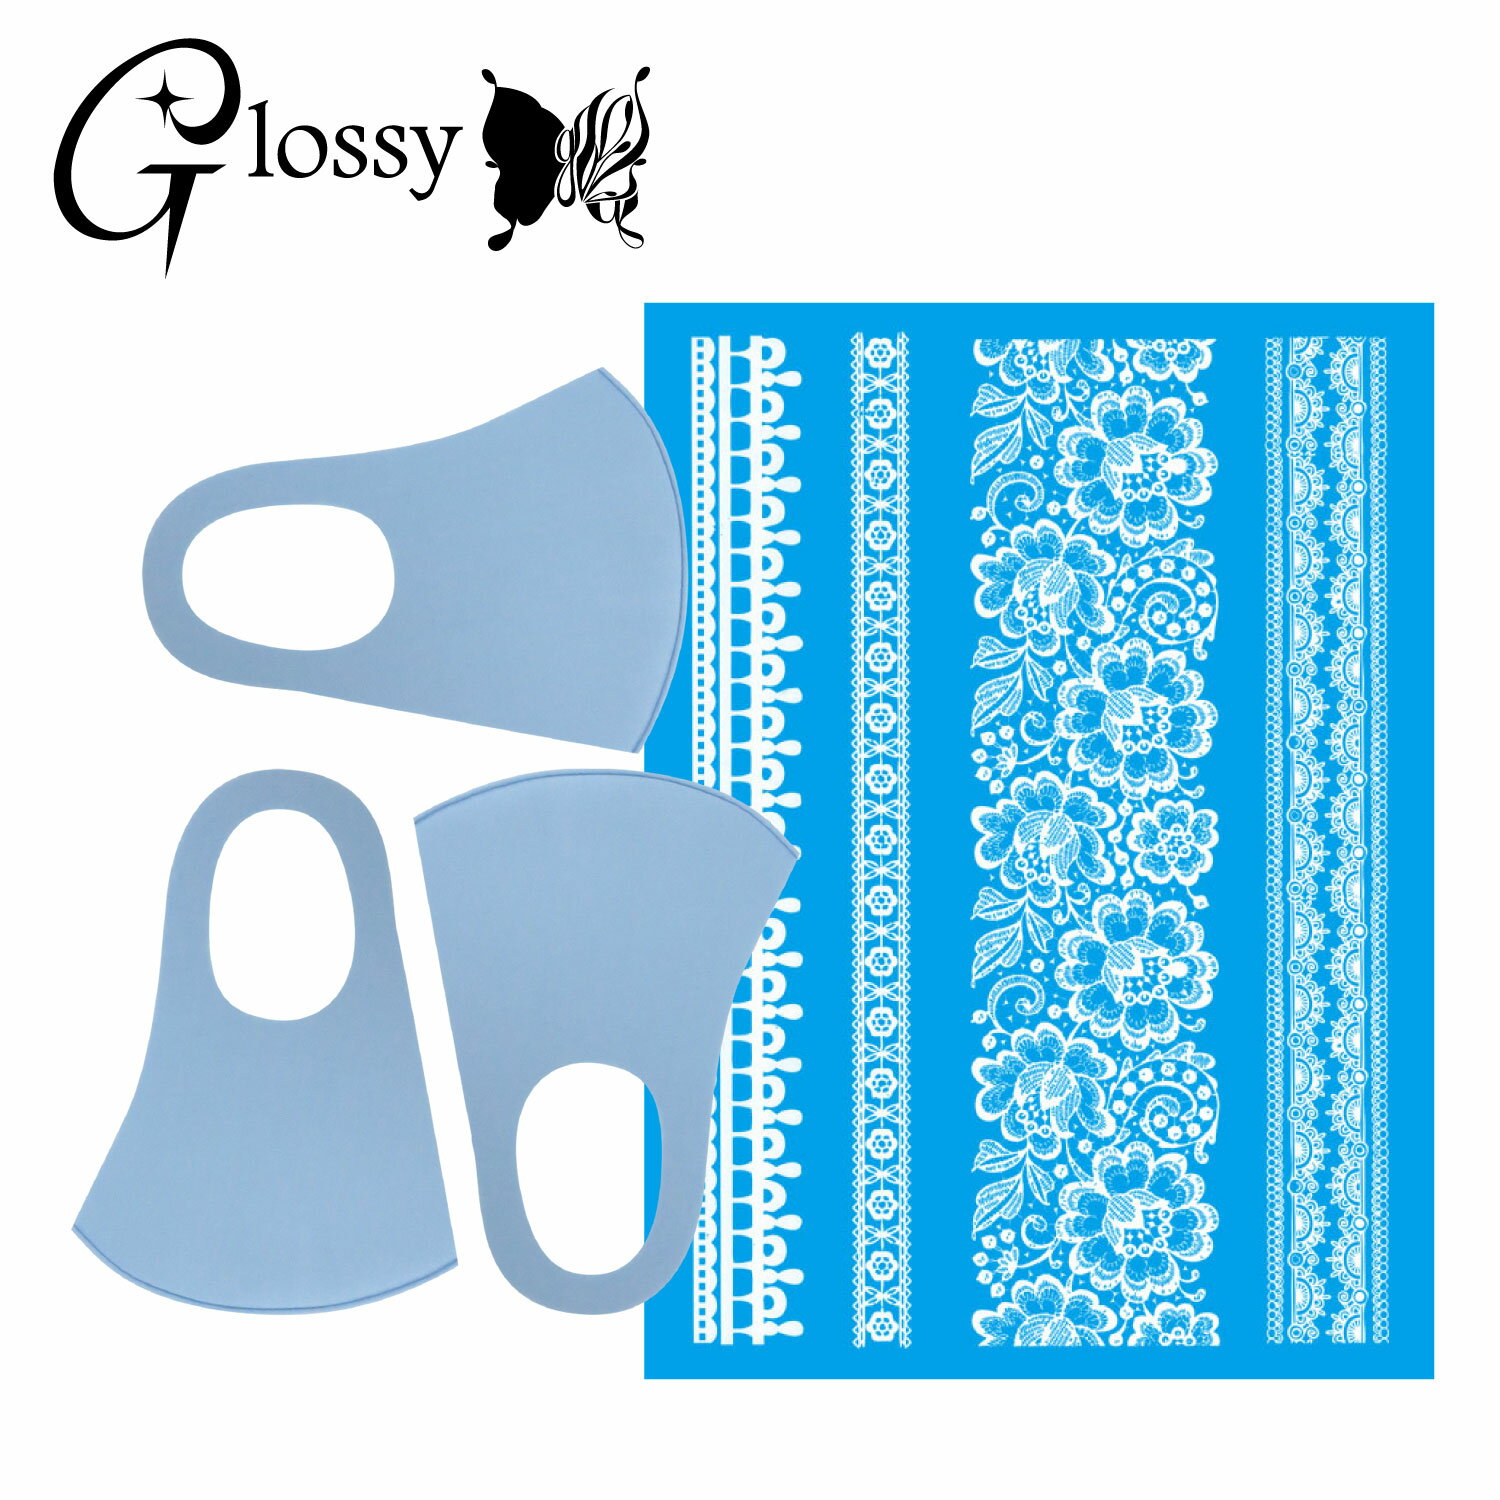 Glossy(グロッシー) デコマスク カラーマスク デコレーションマスクキット 白 レース 花 シール1枚 マスク3枚 ブルー 小さめサイズ DM-545CS (ゆうパケット対応)